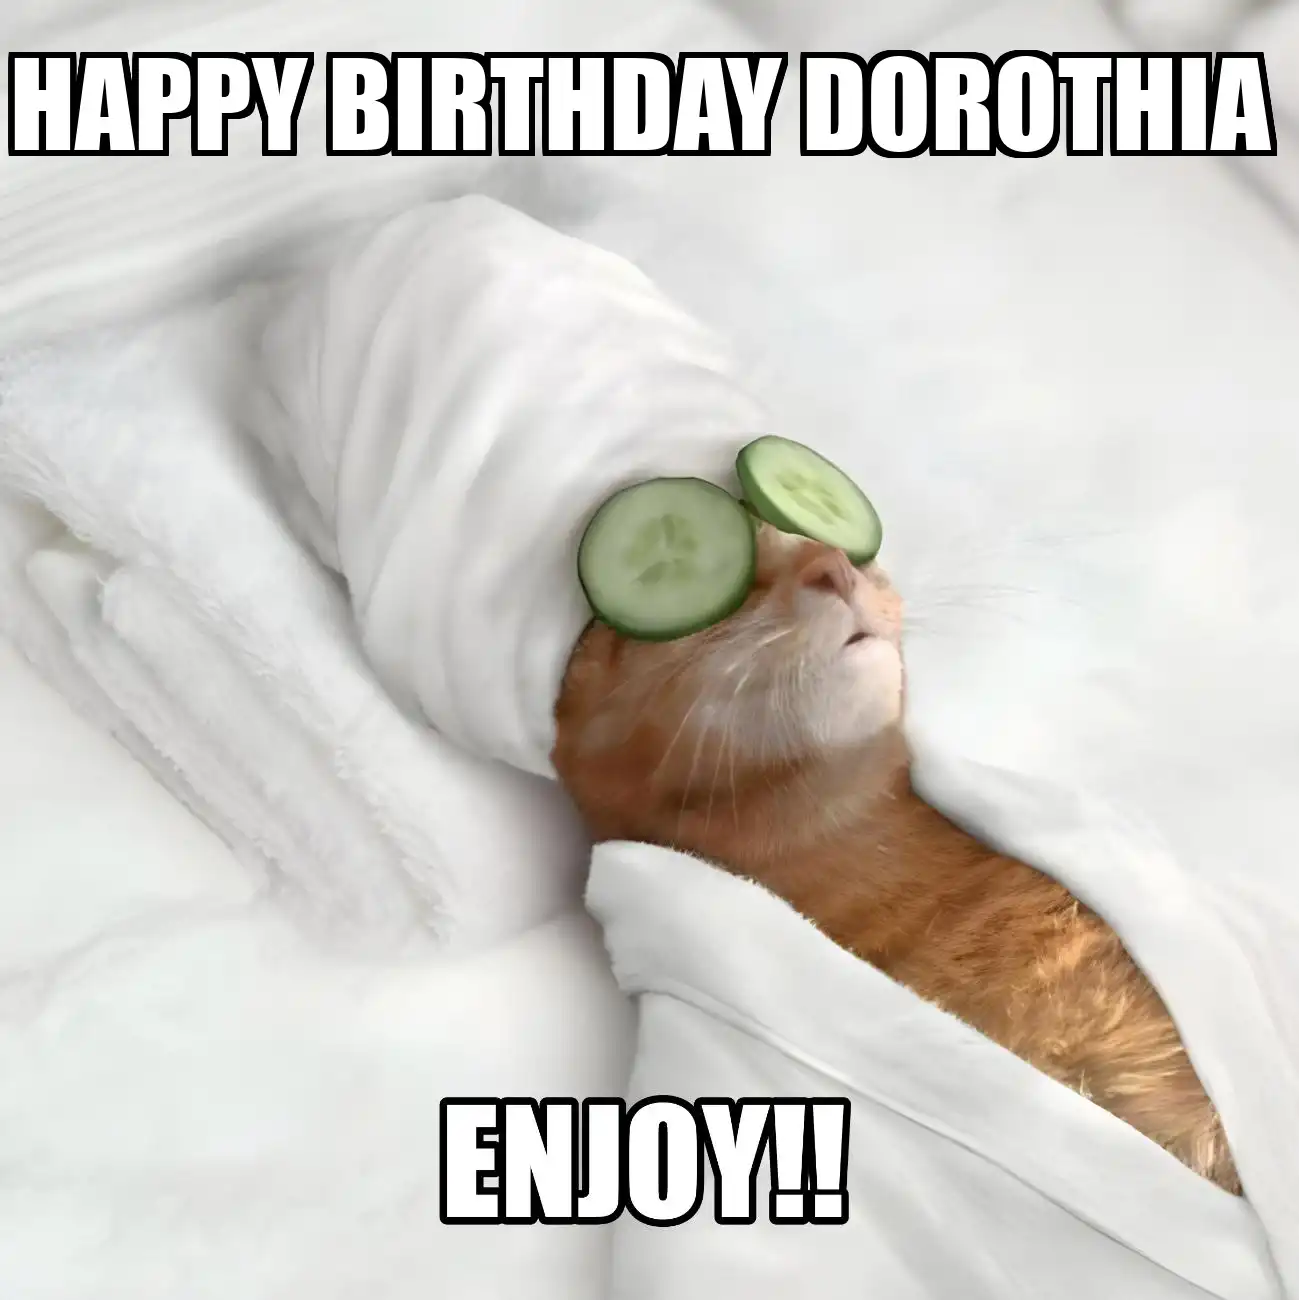 Happy Birthday Dorothia Enjoy Cat Meme